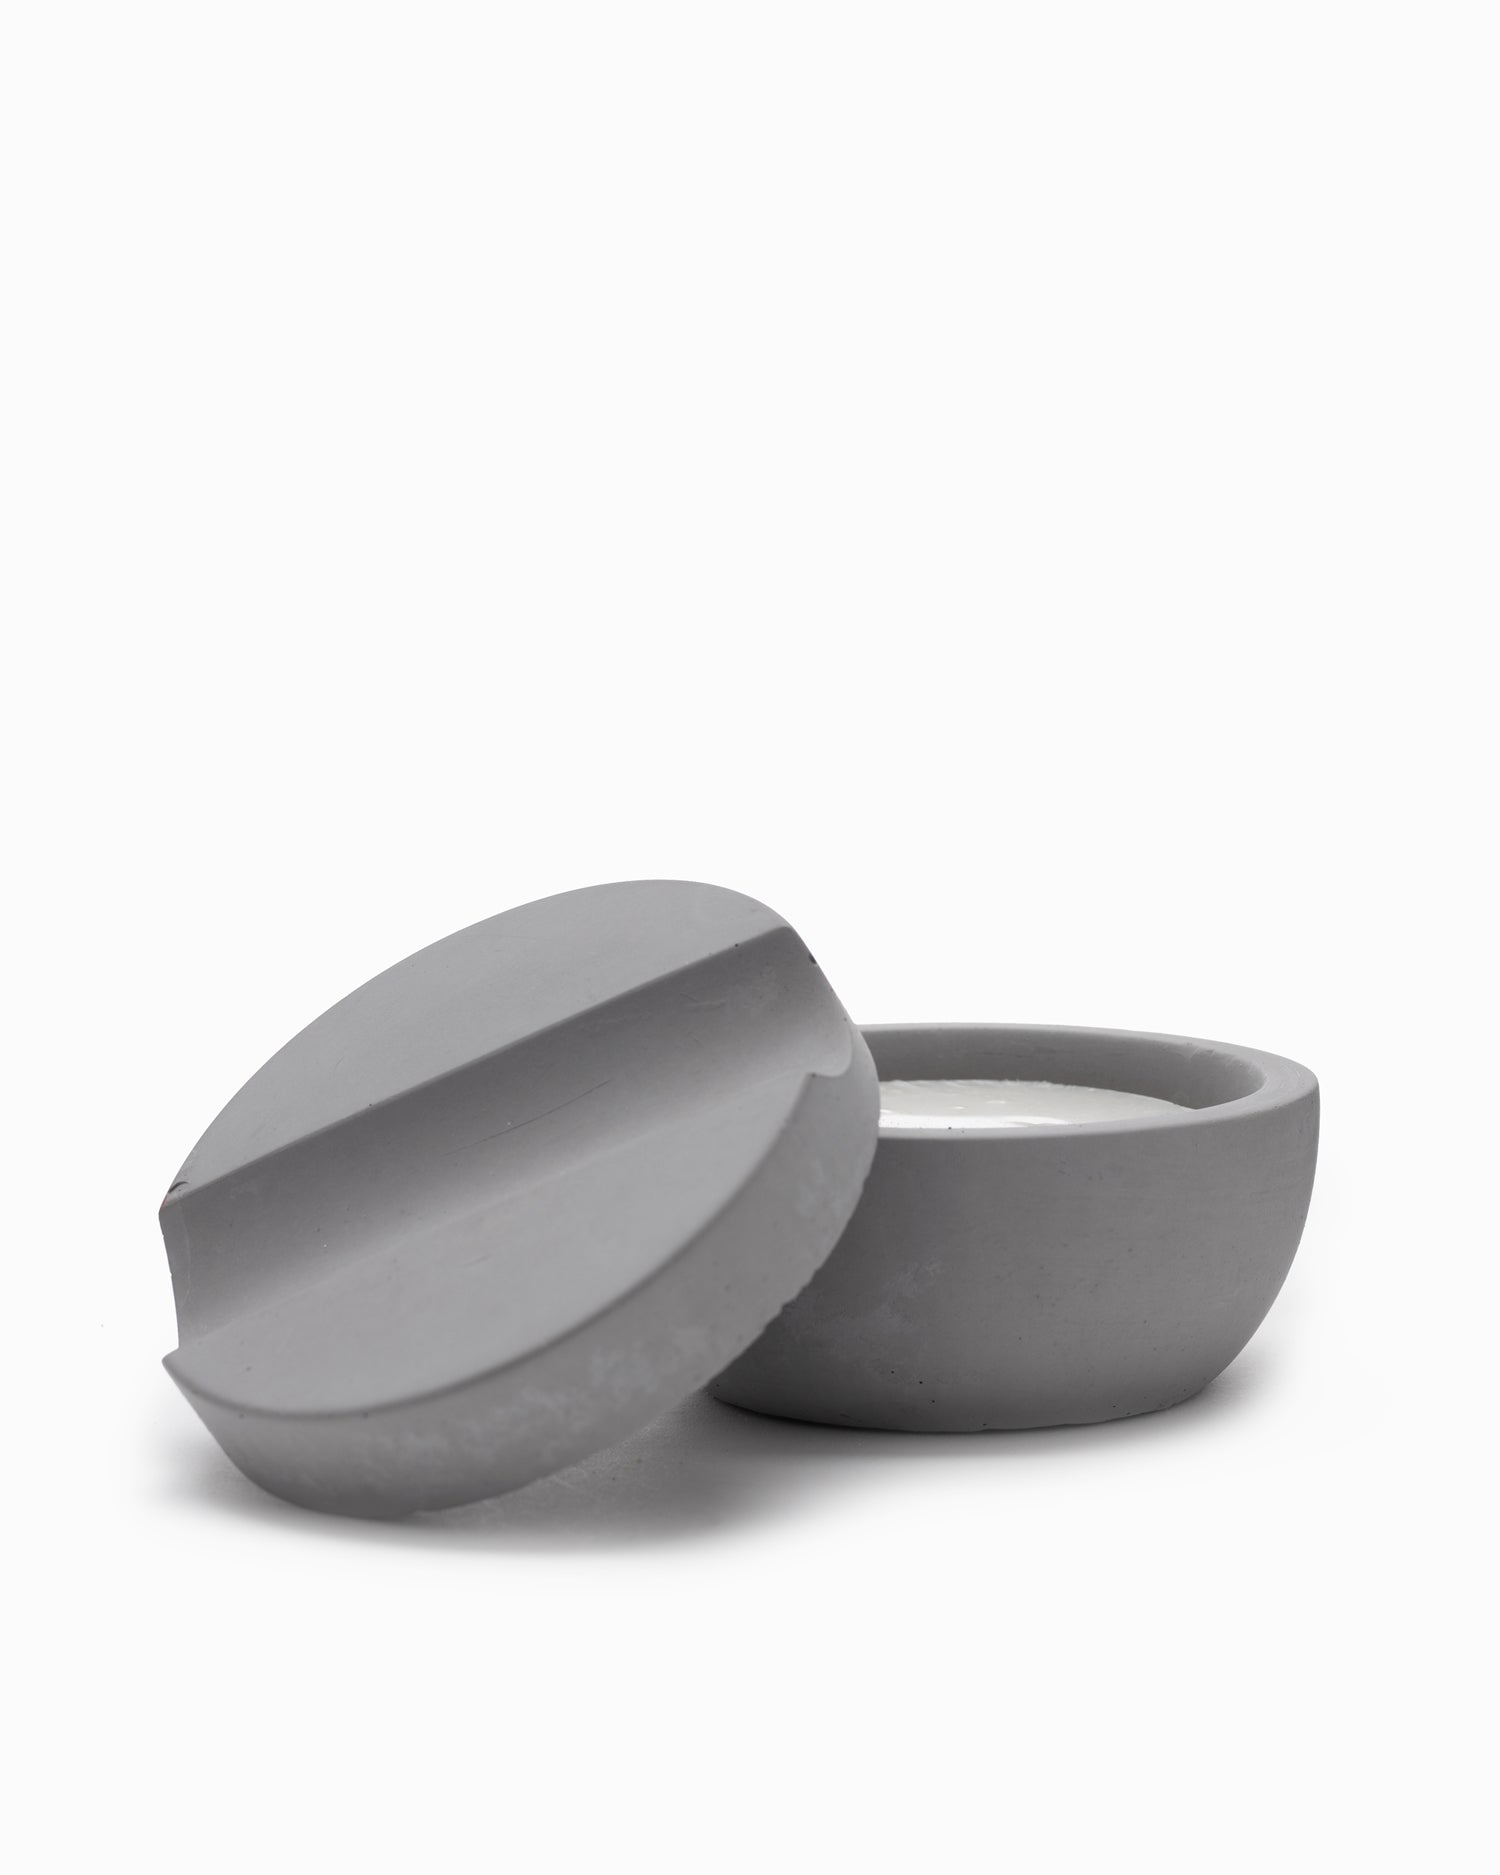 Concrete Shaving Bowl w/Soap & Brush - Iris Hantverk